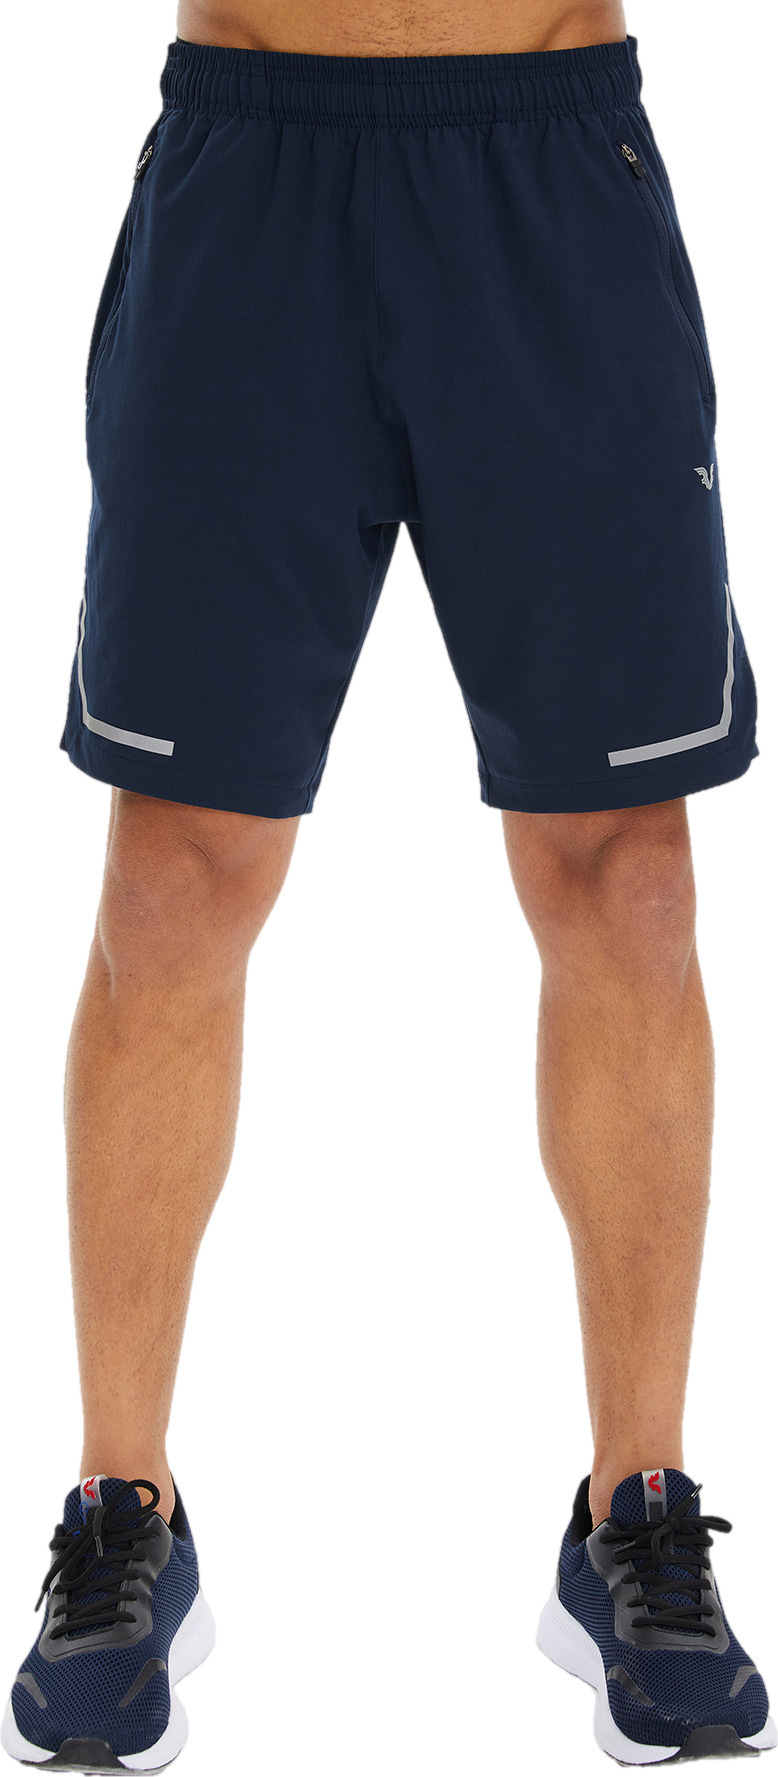 Спортивные шорты мужские Bilcee Men Woven Shorts синие L